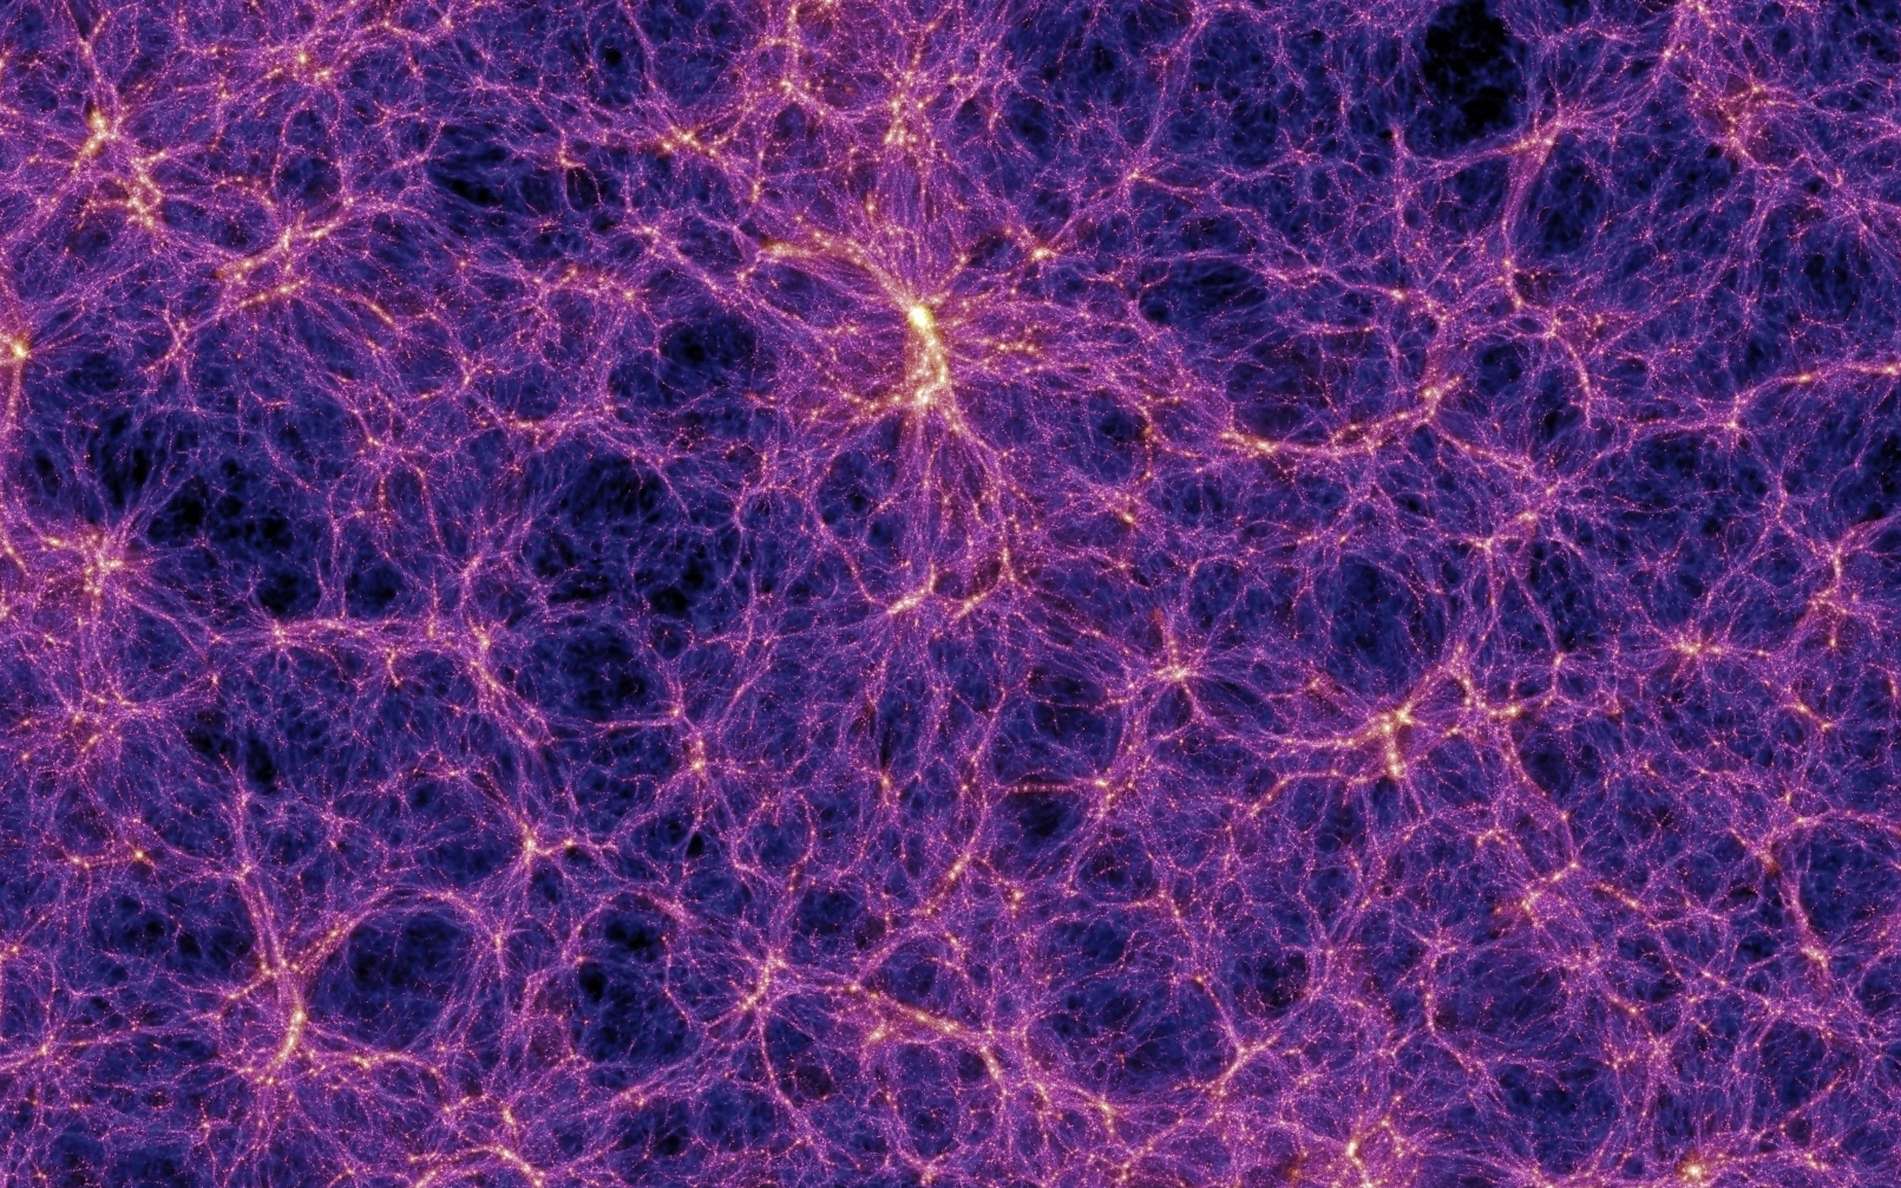 Sur cette image provenant d'une des meilleures simulations de la formation des grandes structures de l'Univers, des filaments de matière noire contenant des superamas de galaxies apparaissent clairement. On note aussi la présence de grands vides que l'on appelle parfois des vides cosmiques (cosmic voids, en anglais). © Max Planck Institute for Astrophysics, Millennium Simulation Project